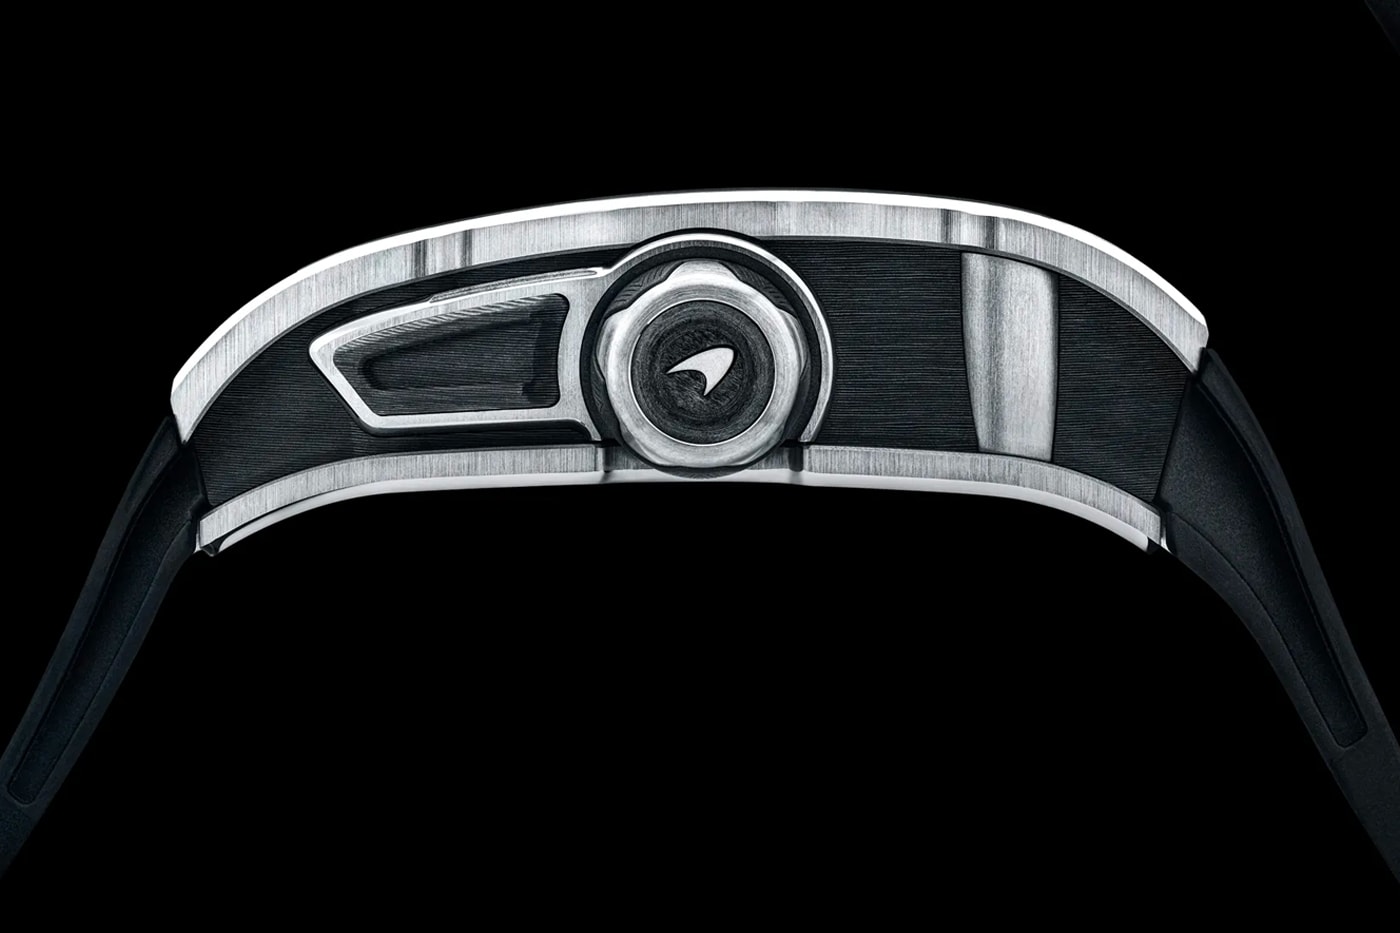 맥라렌 x 리차드 밀이 제작한 ‘오토매틱 투르비용’의 모습은?, 하이퍼 GT카, 스피드테일, 스위스 럭셔리 워치 브랜드